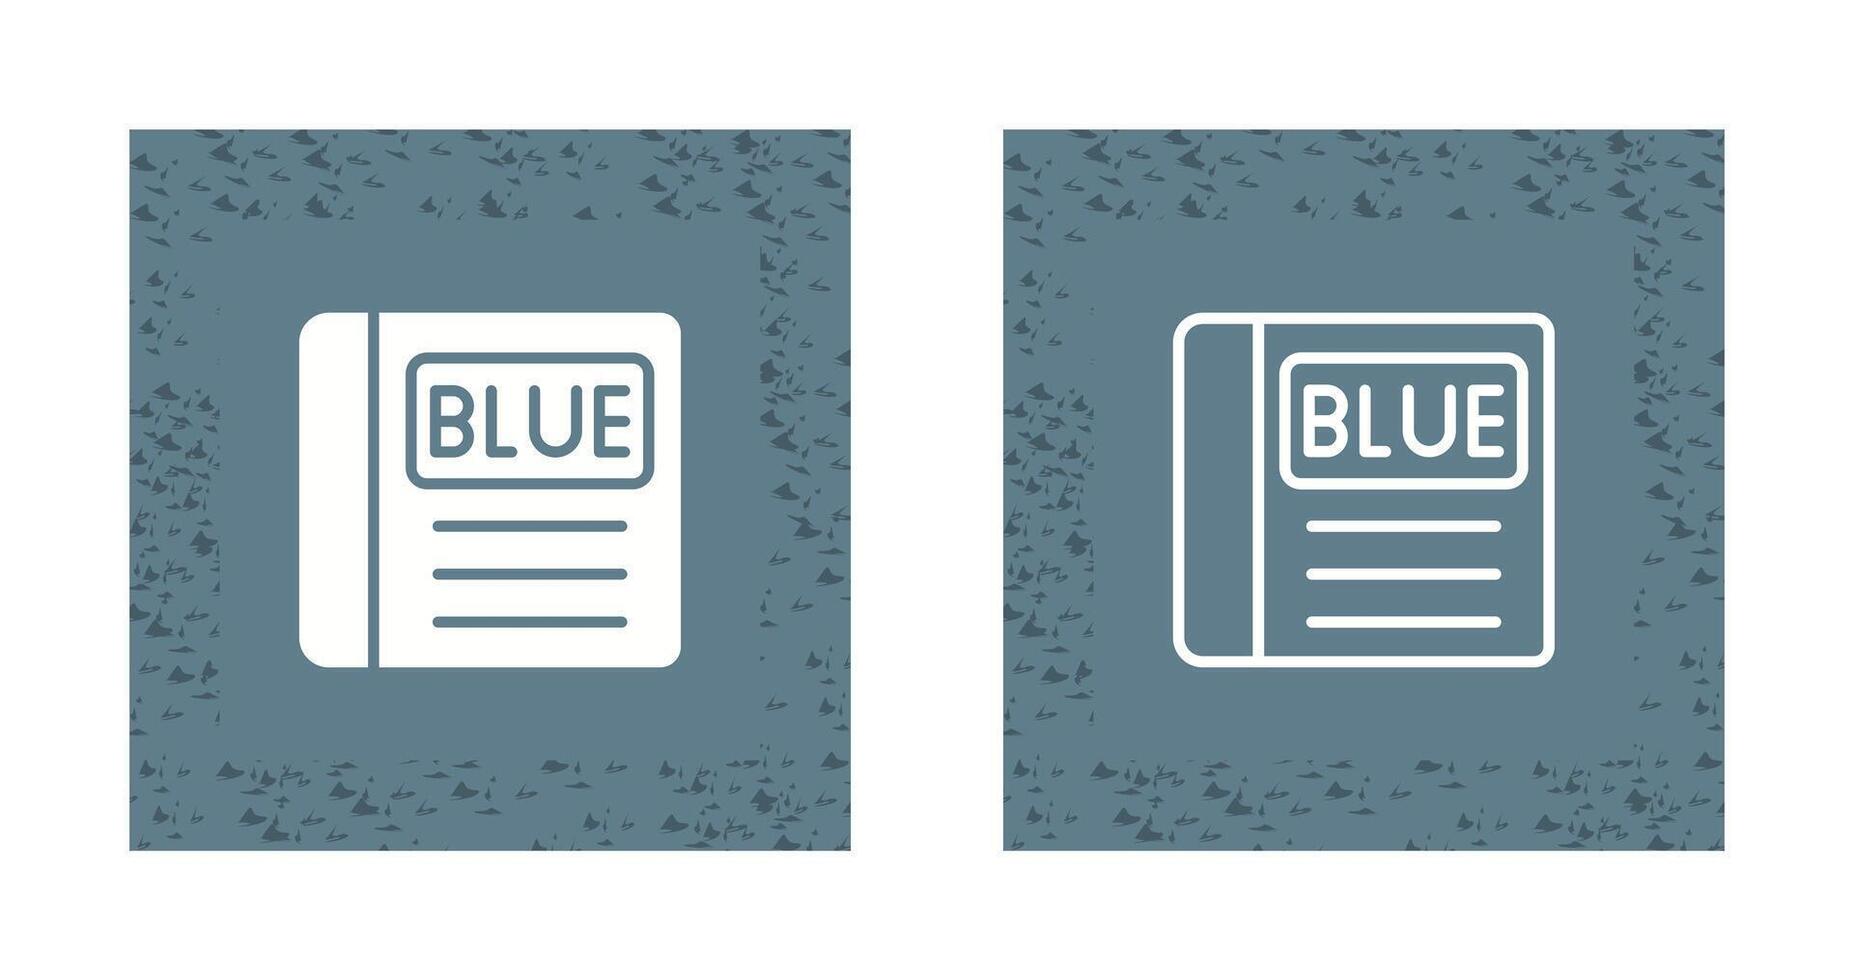 blå bok vektor ikon